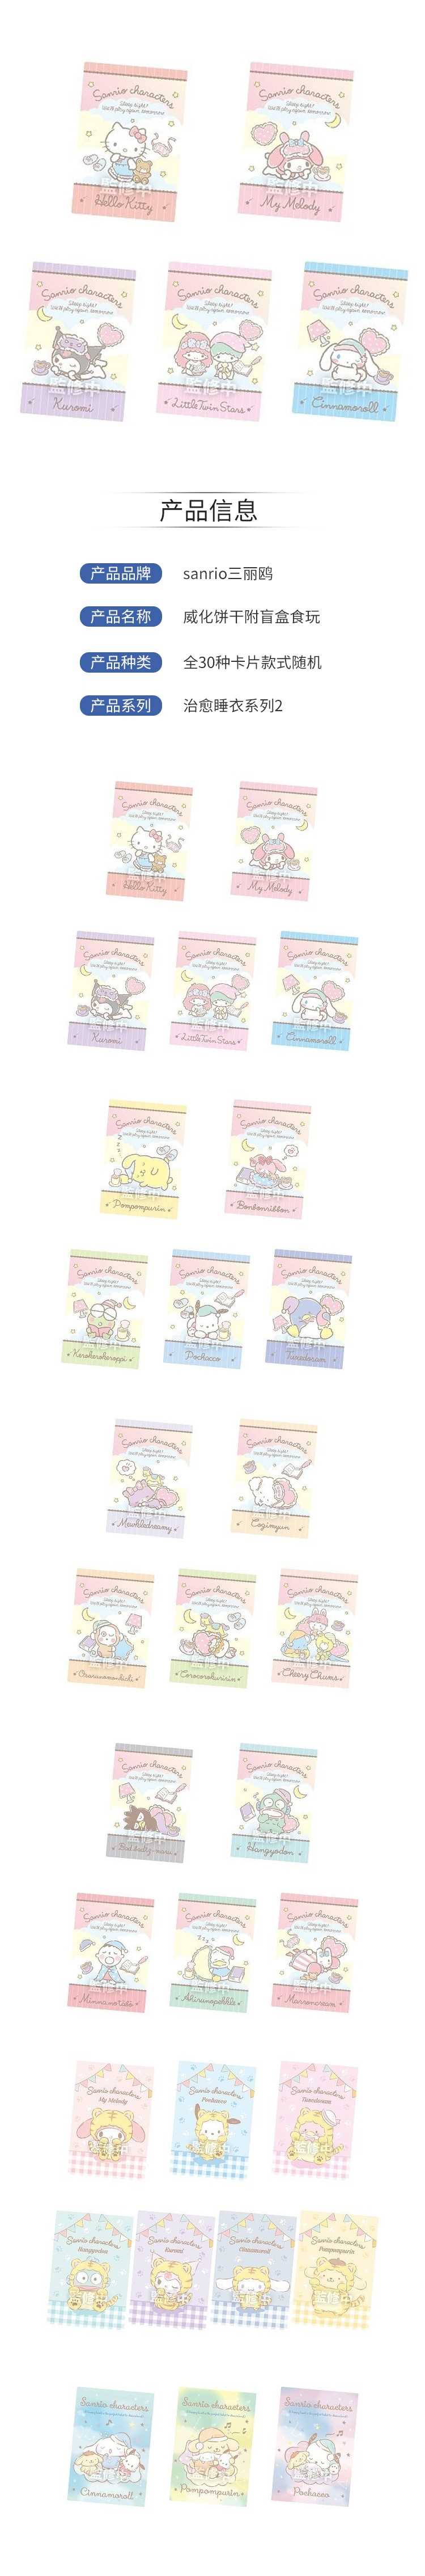 【预售周边】sanrio三丽鸥-威化饼干附盲盒食玩全30种卡片款式随机9月5日发售-治愈睡衣系列2.jpg